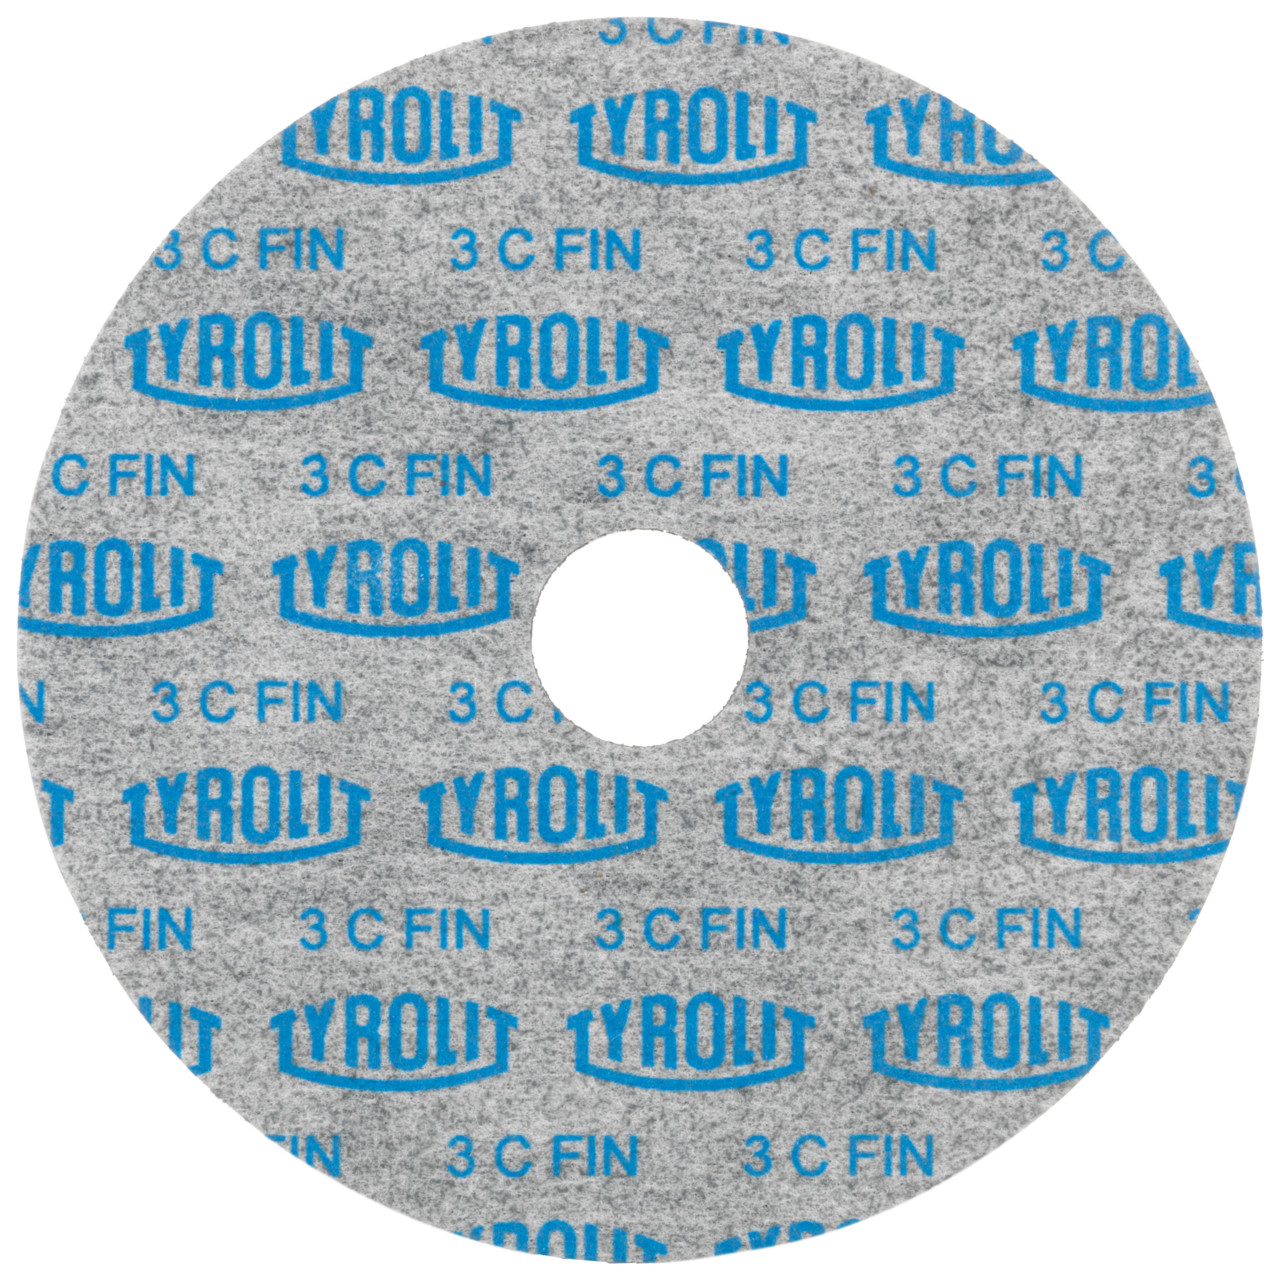 Tyrolit Discos compactos prensados DxDxH 152x3x25,4 De uso universal, 2 A MEDIO, forma: 1, Art. 34190125